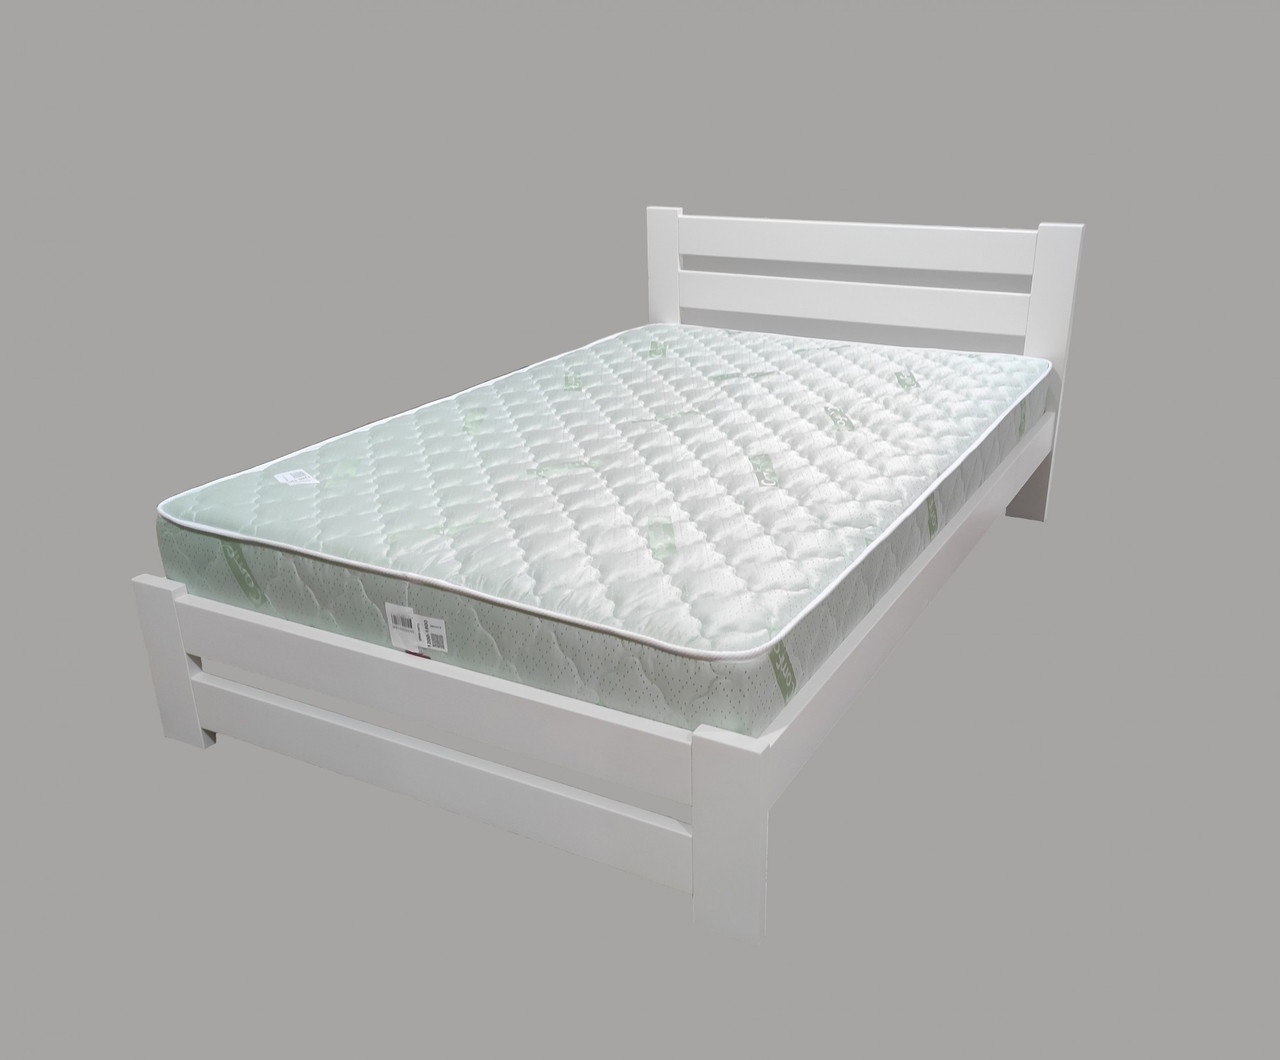 Односпальне ліжко з масиву дуба Палермо плюс 90х190 в молочній емалі Ral 9010 Крок ламелей 5,5 см.